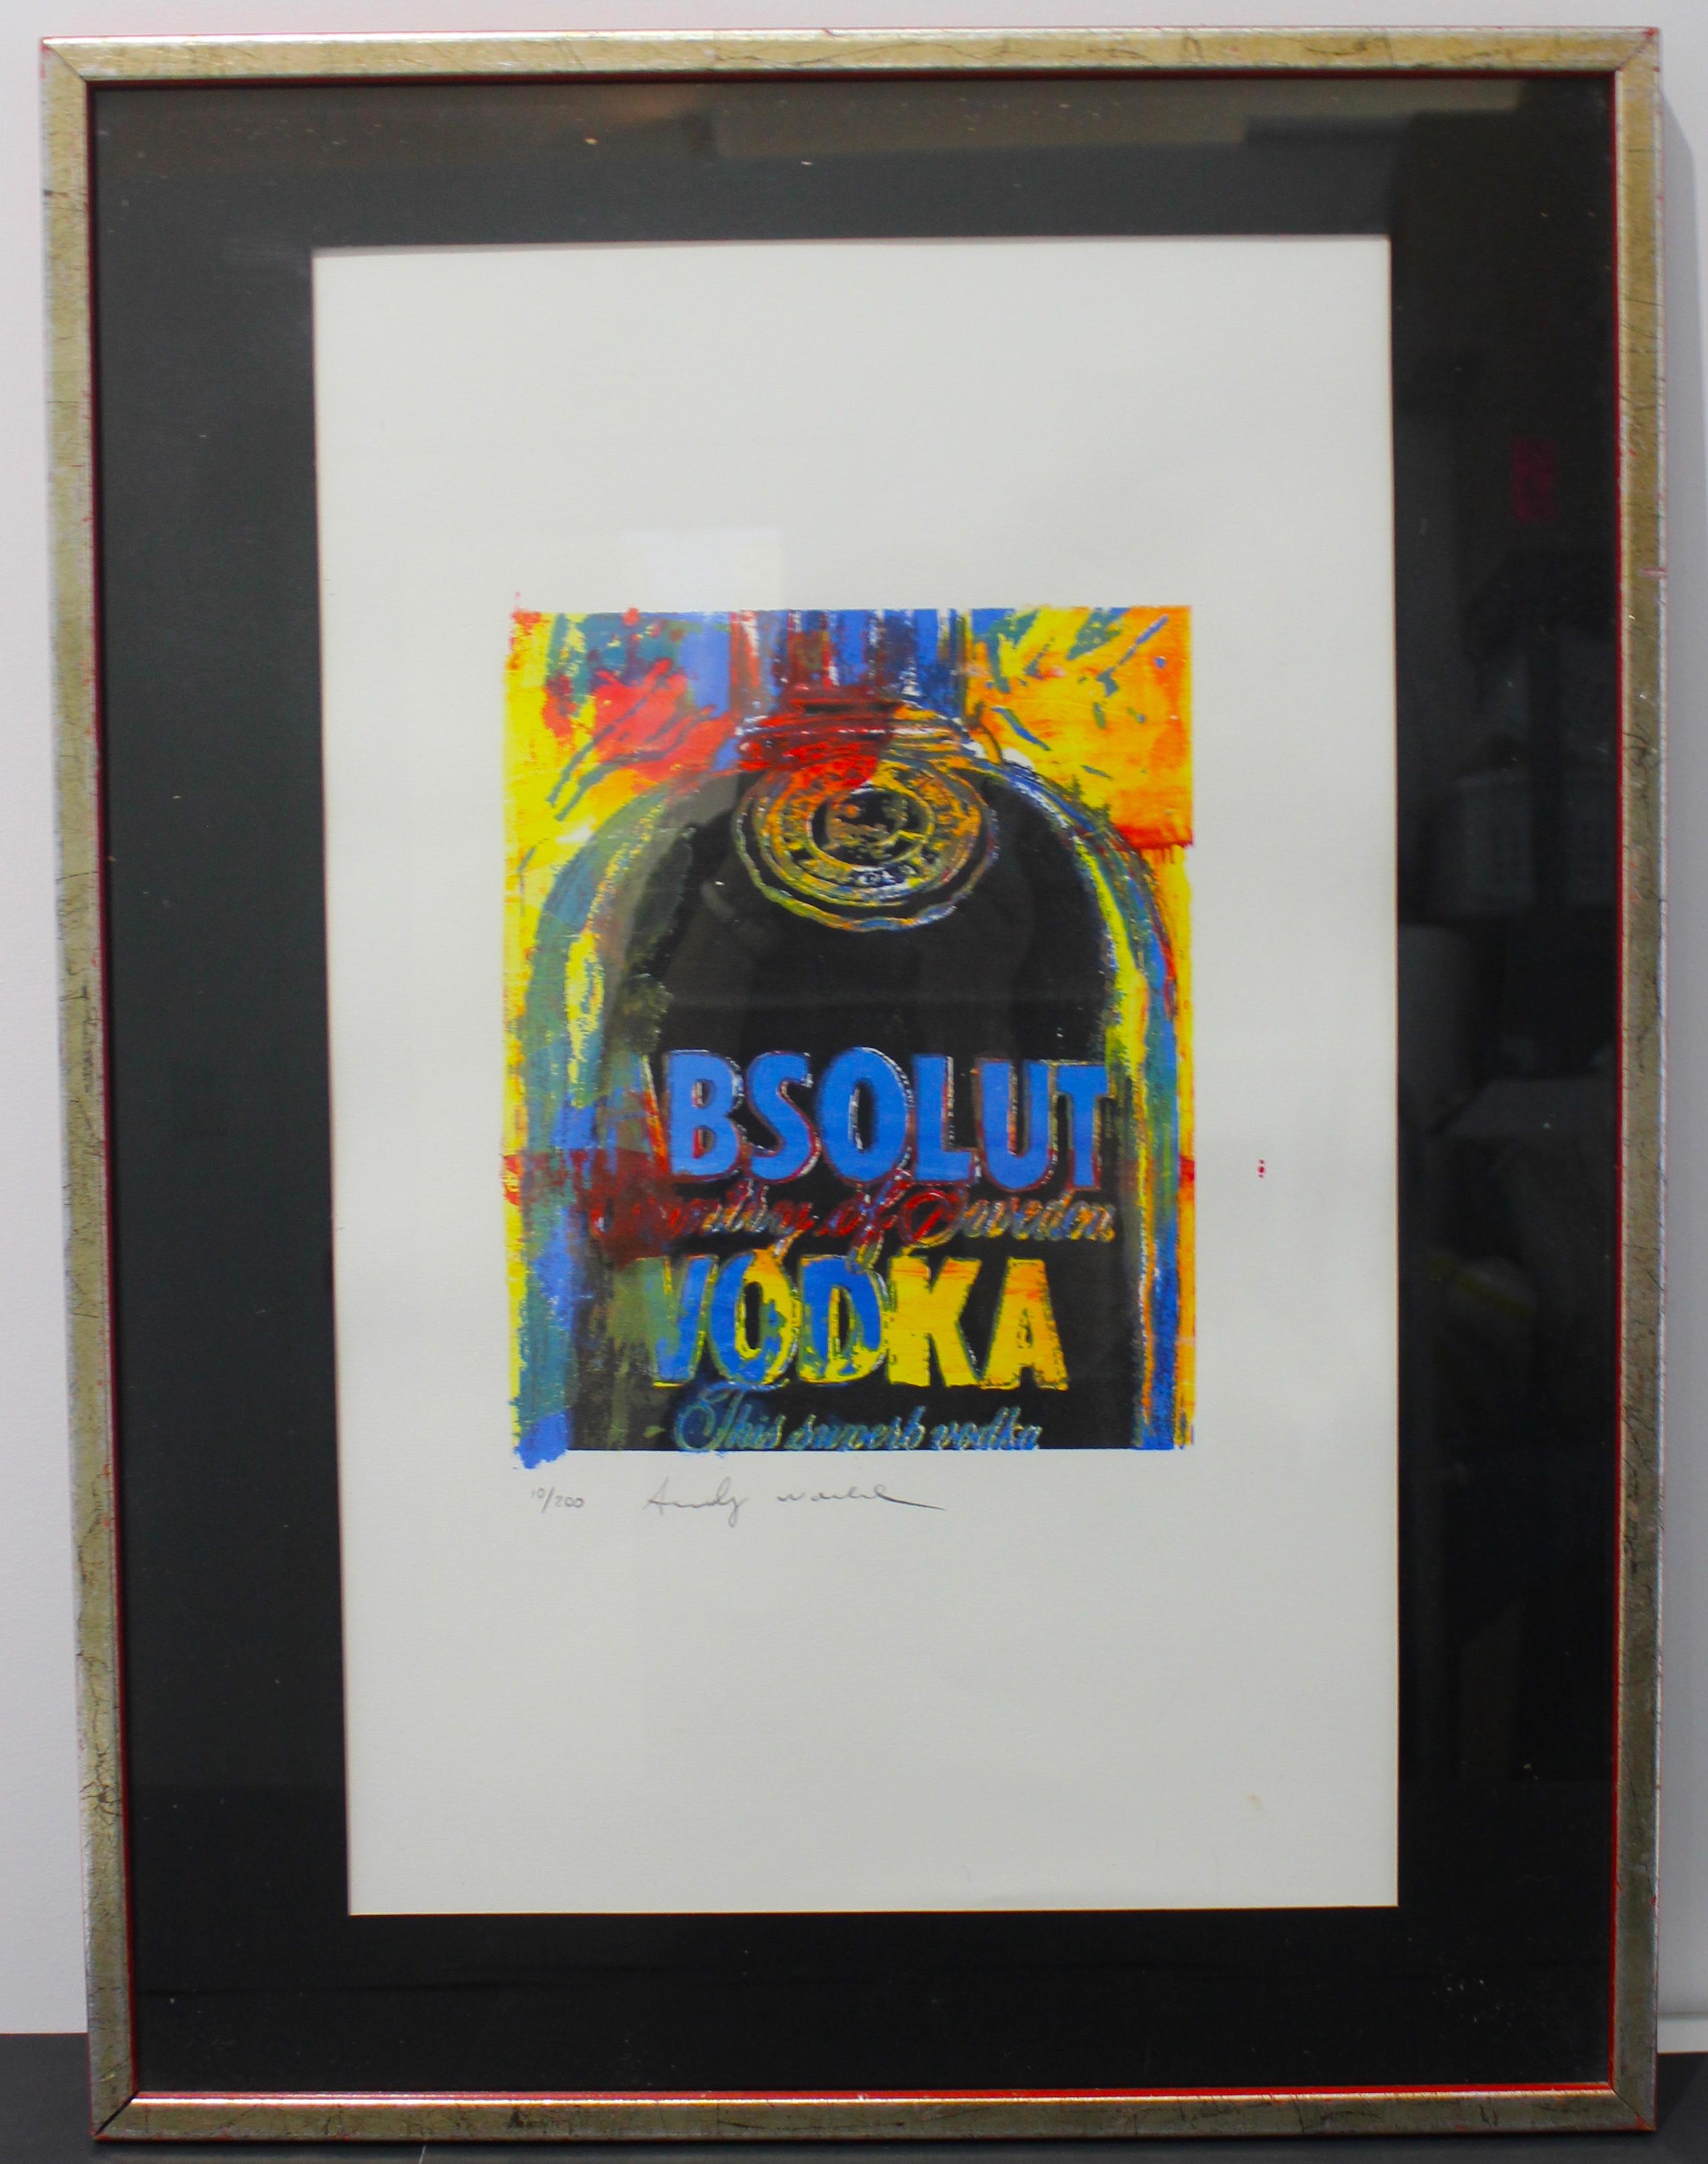 Cette élégante et emblématique lithographie en édition limitée d'une bouteille d'Absolute Vodka a été créée par Andy Warhol en 1986.

L'œuvre est signée et numérotée 10/200 au crayon.